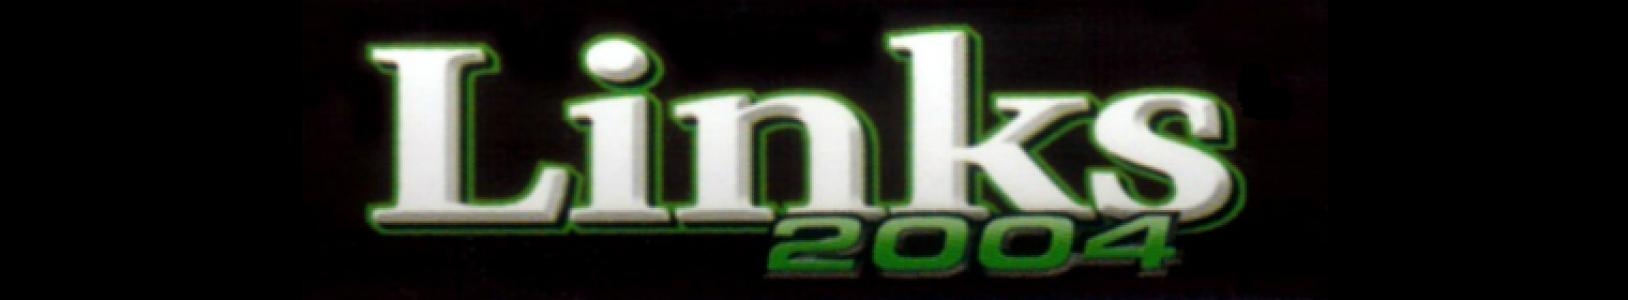 Links 2004 banner